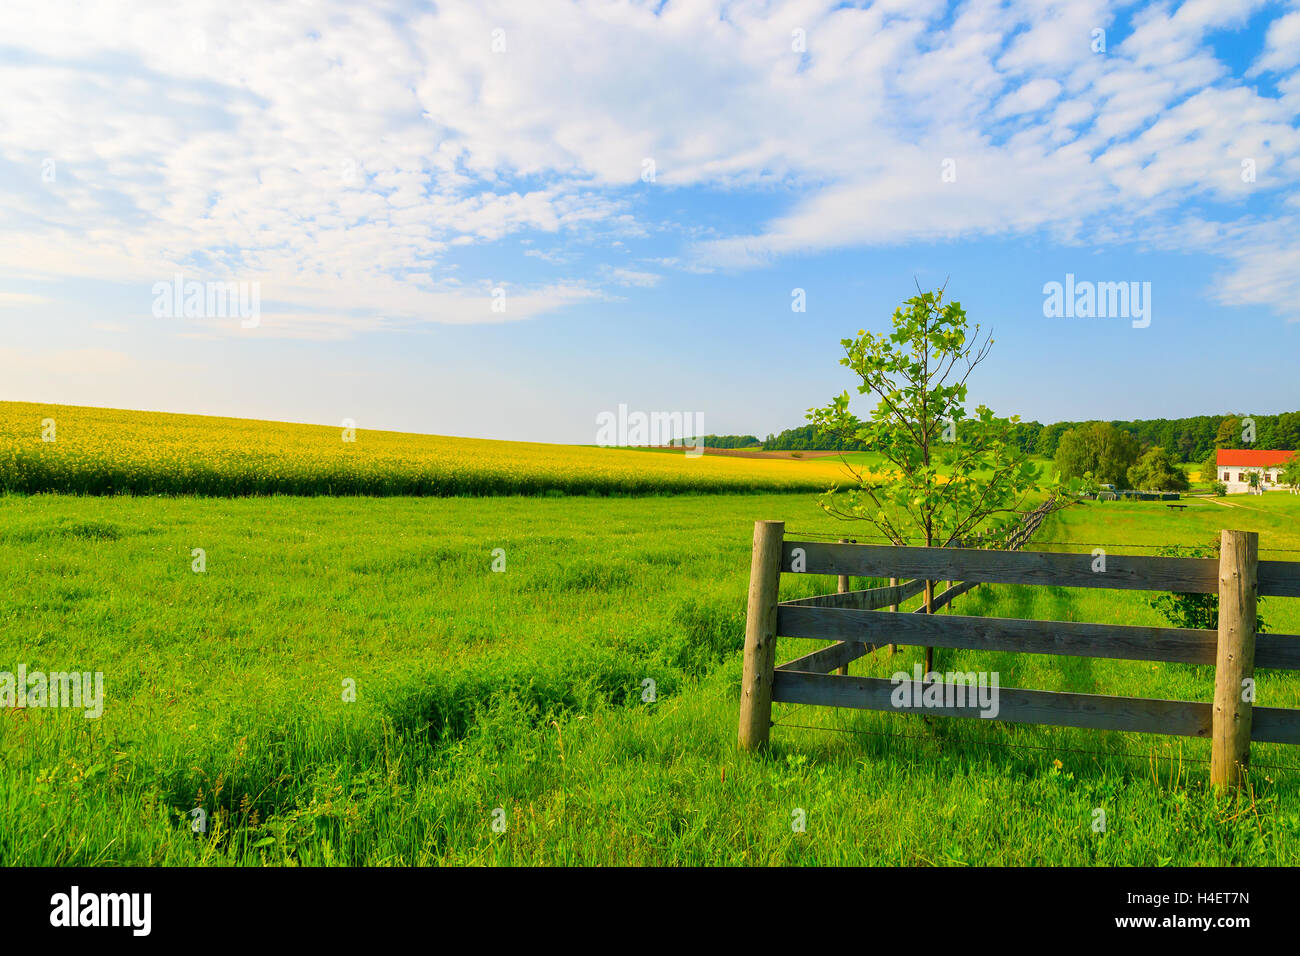 Hölzerne Weide Zaun auf grüne Landwirtschaft Feld mit gelben Raps Blumenwiese im südlichen Hintergrund, Burgenland, Österreich Stockfoto